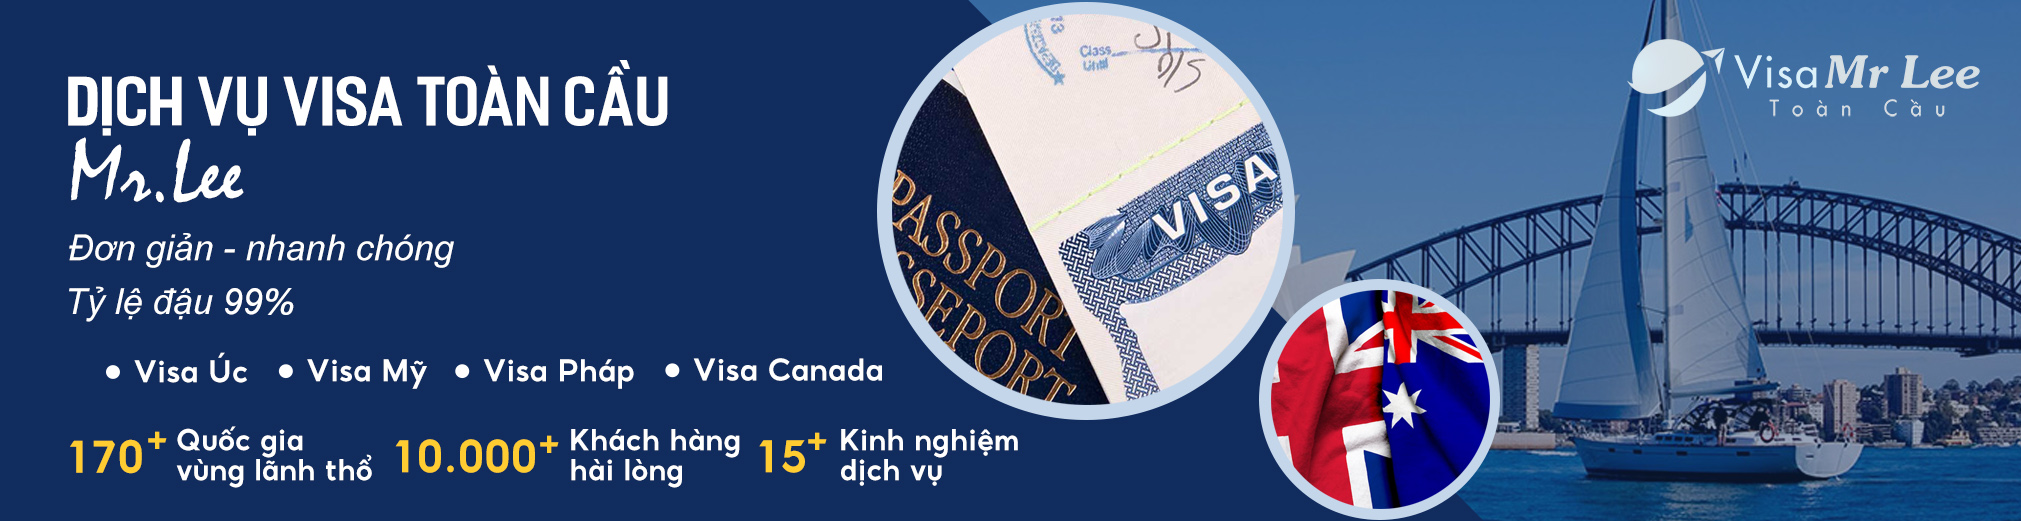 banner-dich-vu-visa